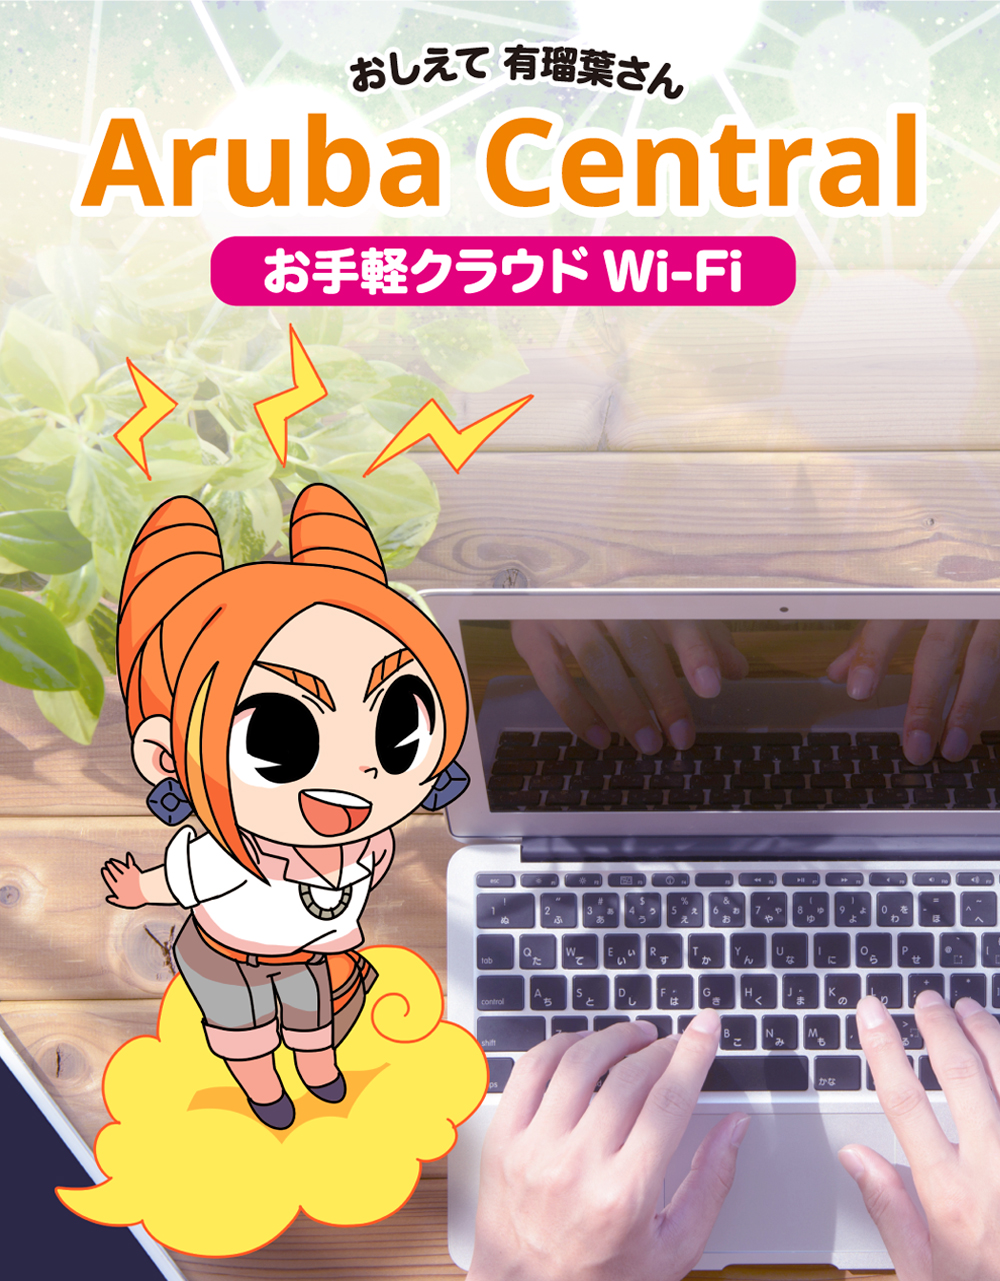 おしえて有瑠葉さん「Aruba Central」お手軽クラウドWi-Fi